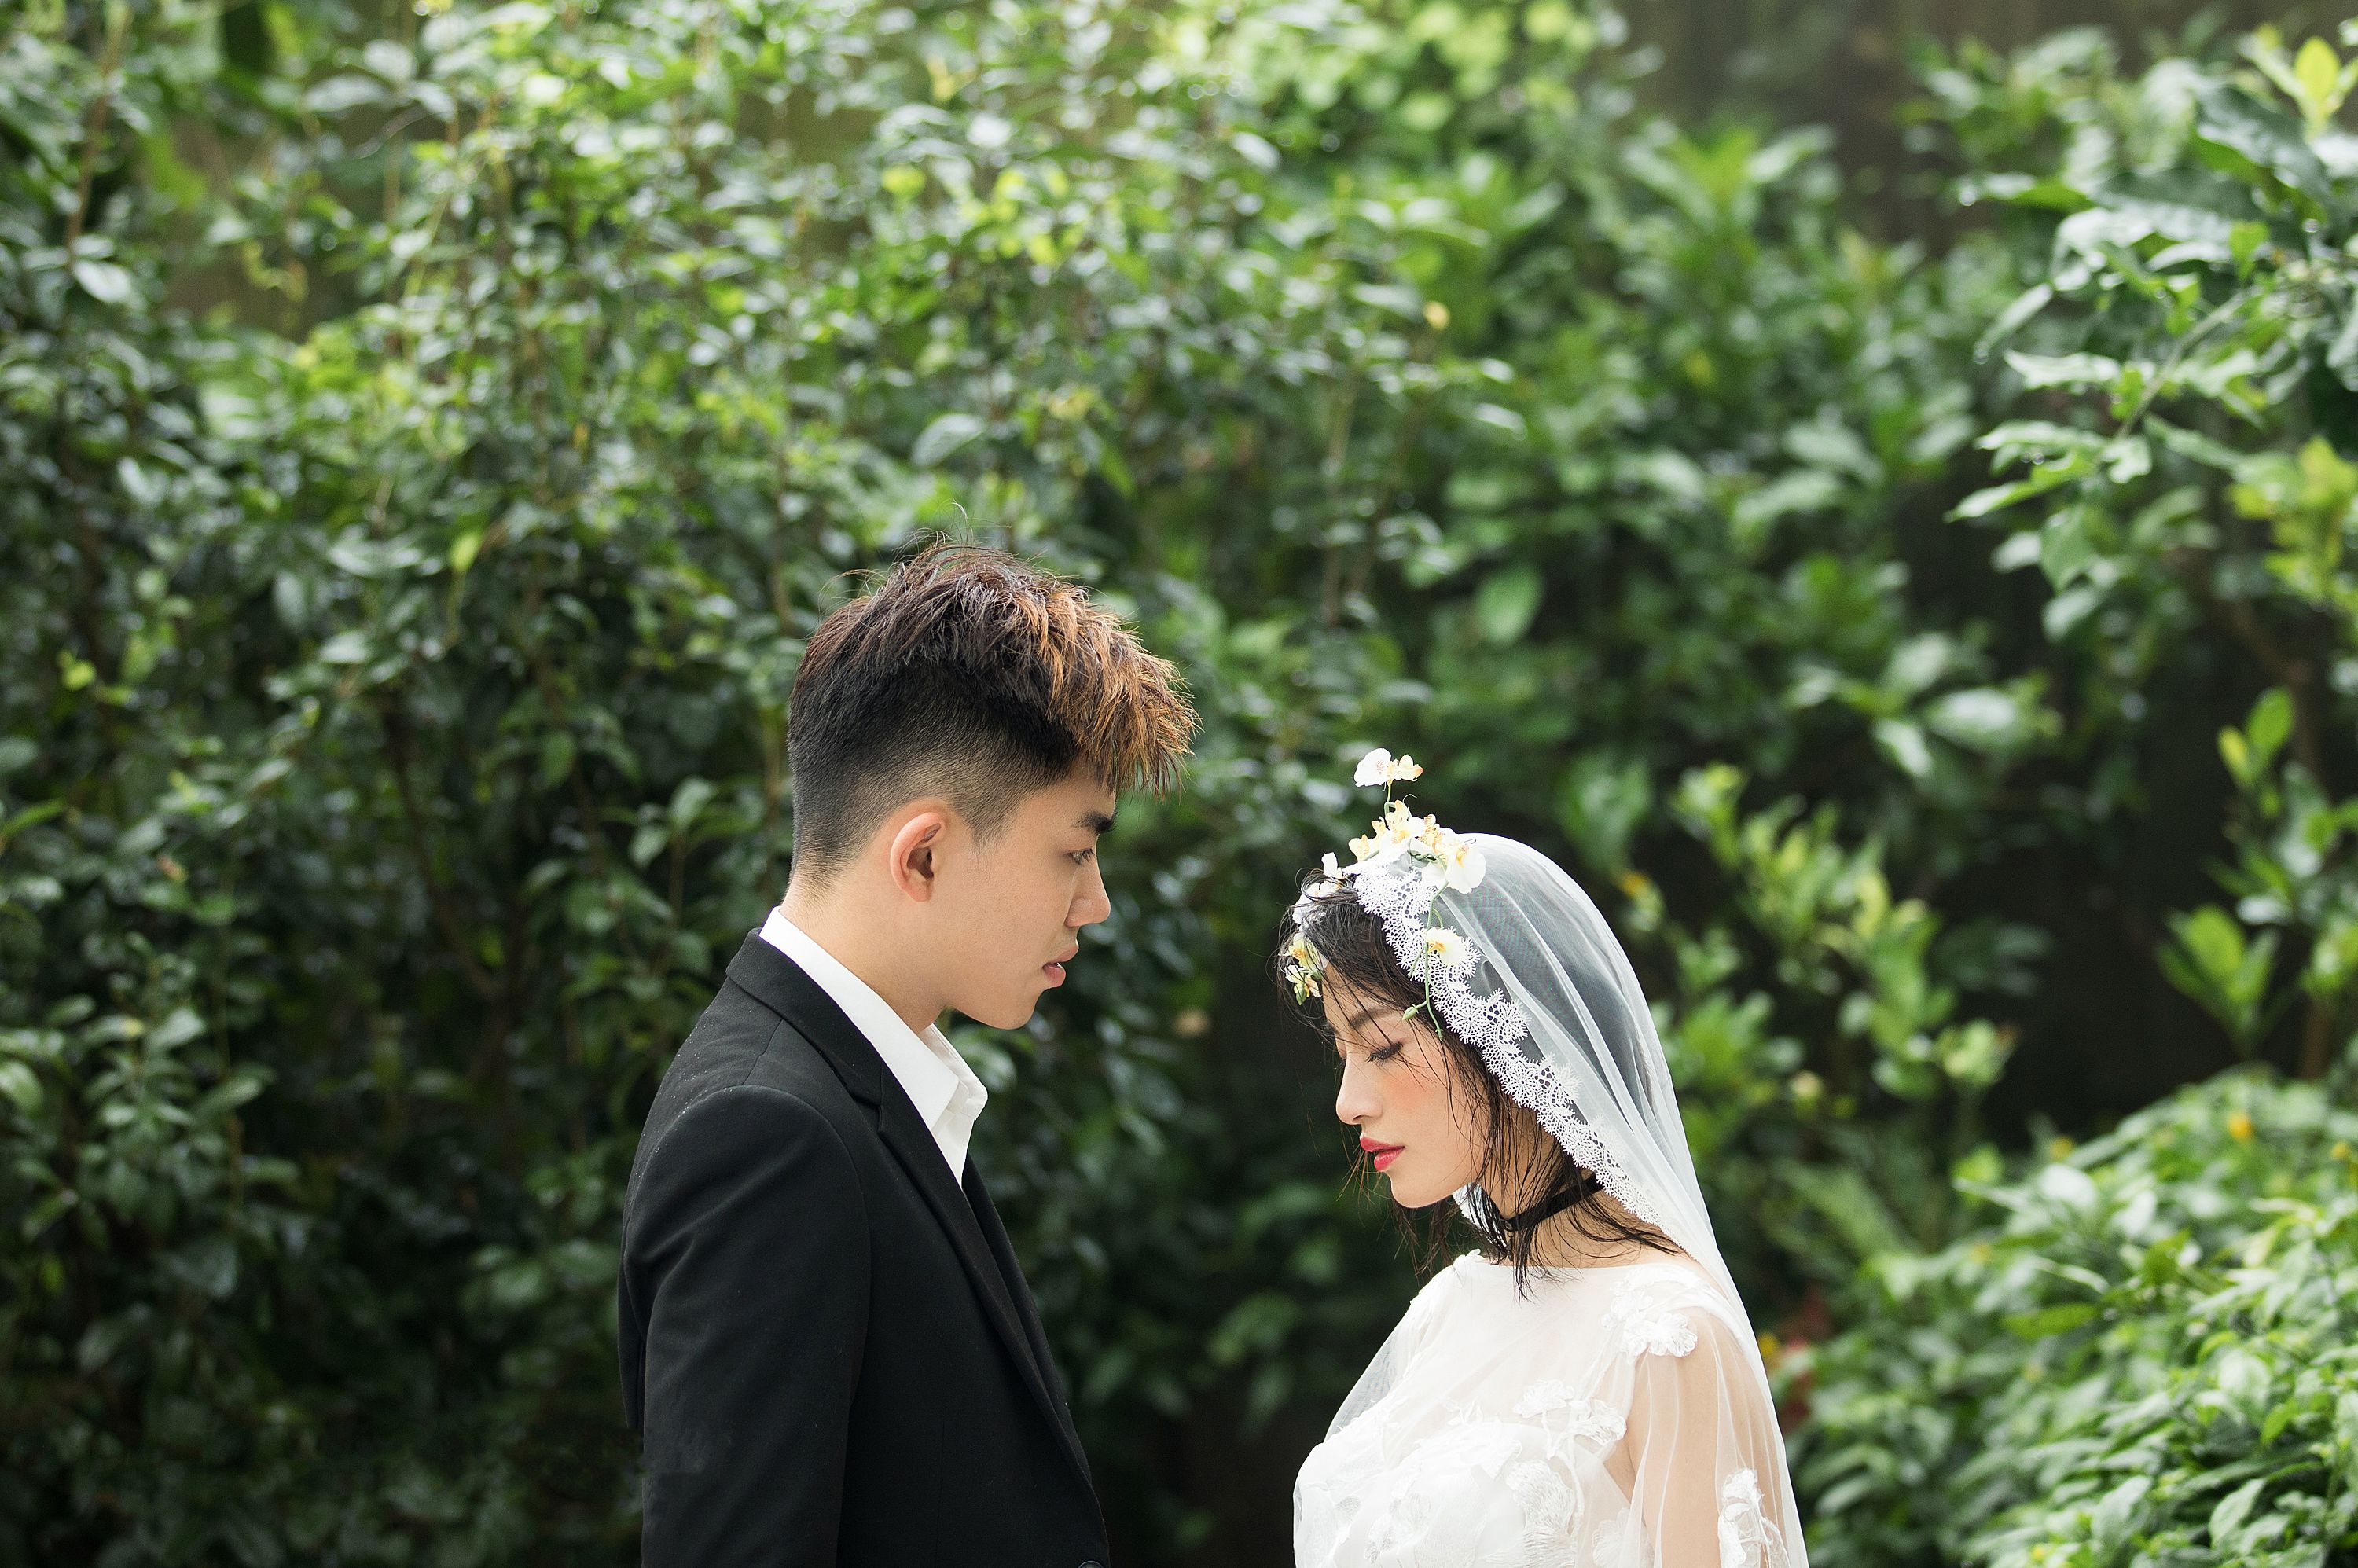 2018年5月深圳结婚照,深圳婚纱照,婚纱照图片